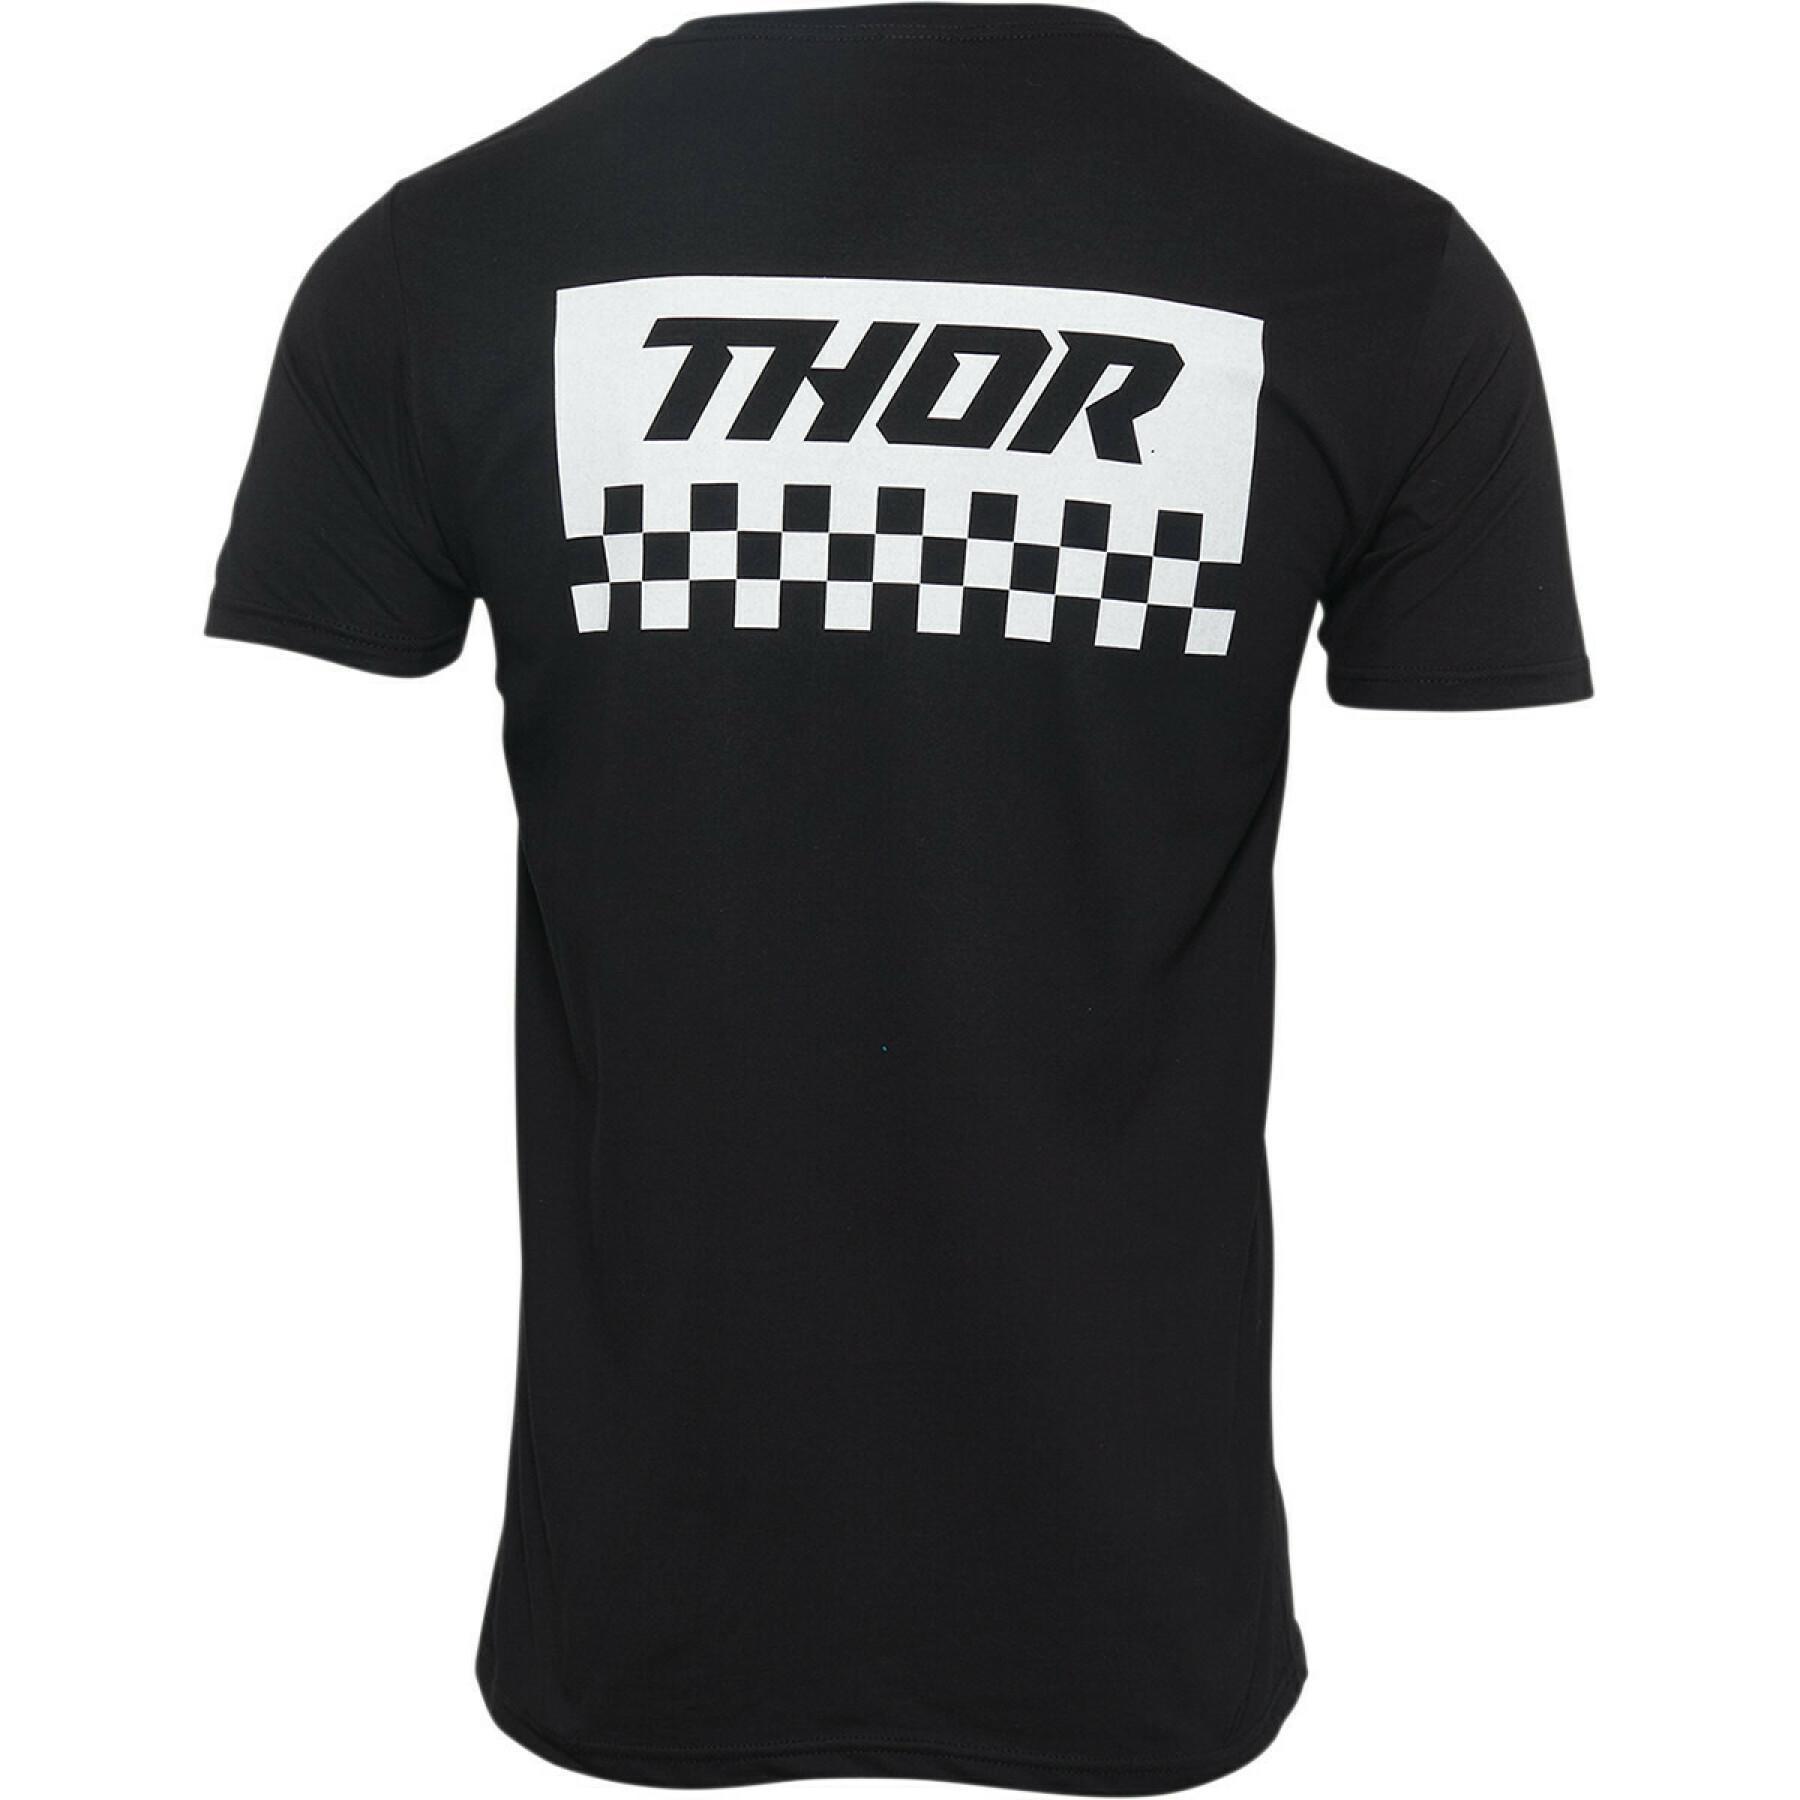 T-shirt Thor checkers